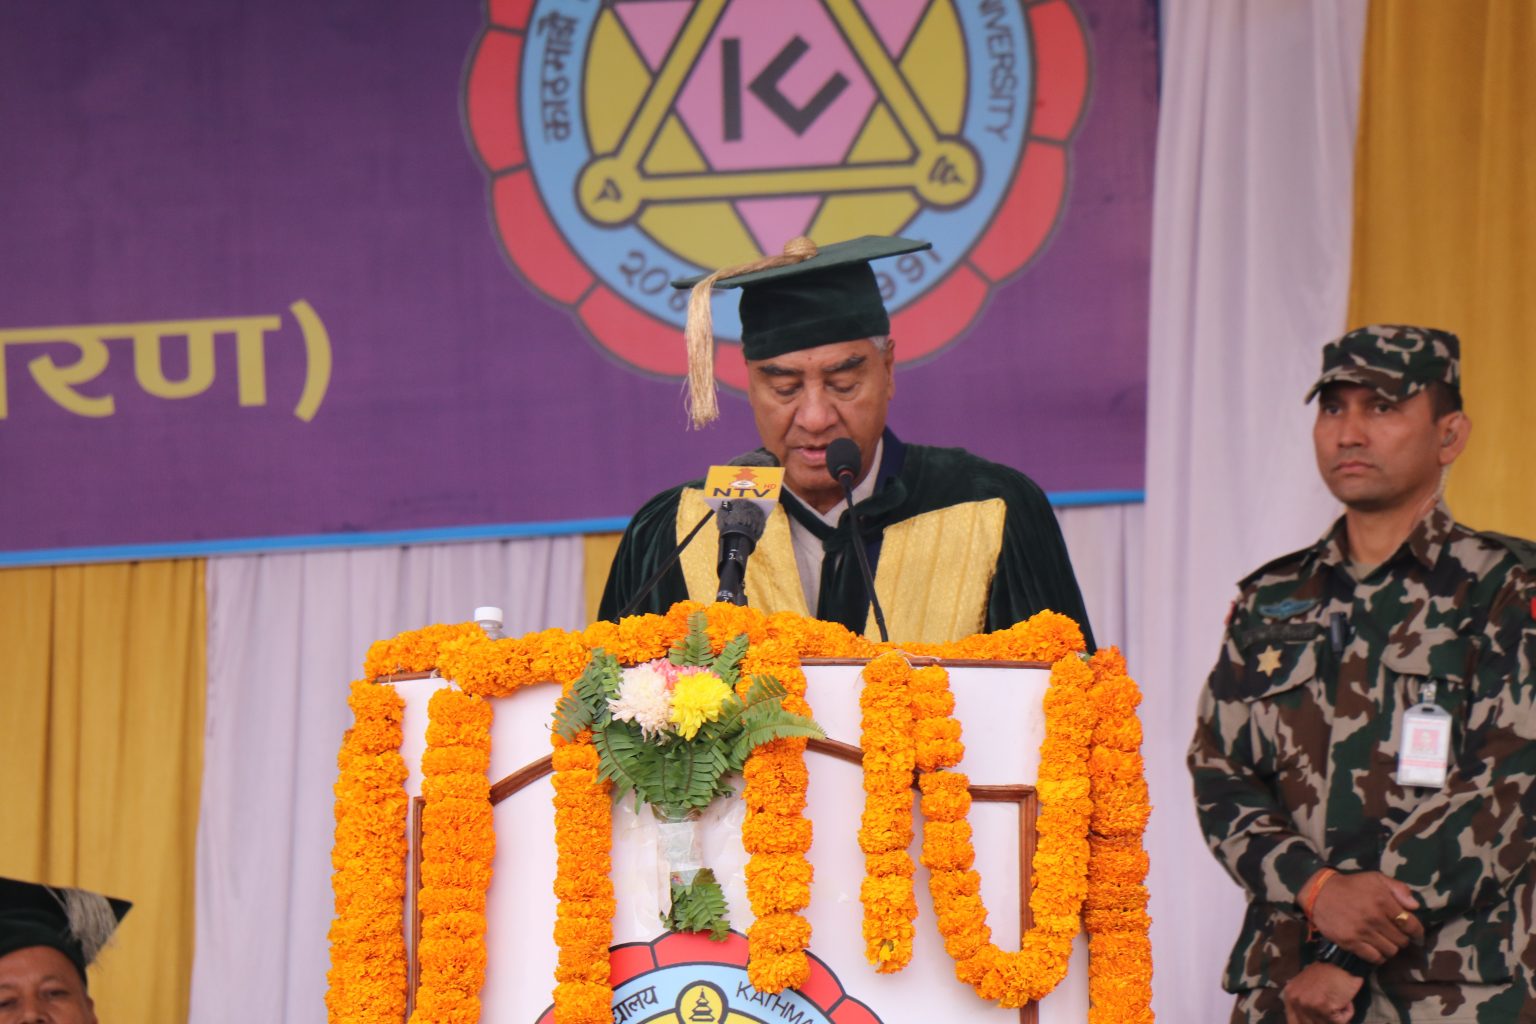 काठमाडौं विश्वविद्यालयको दीक्षान्त समारोह : विश्वविद्यालय राजनीतिक मुक्त हुनुपर्ने प्रधानमन्त्रीको भनाई